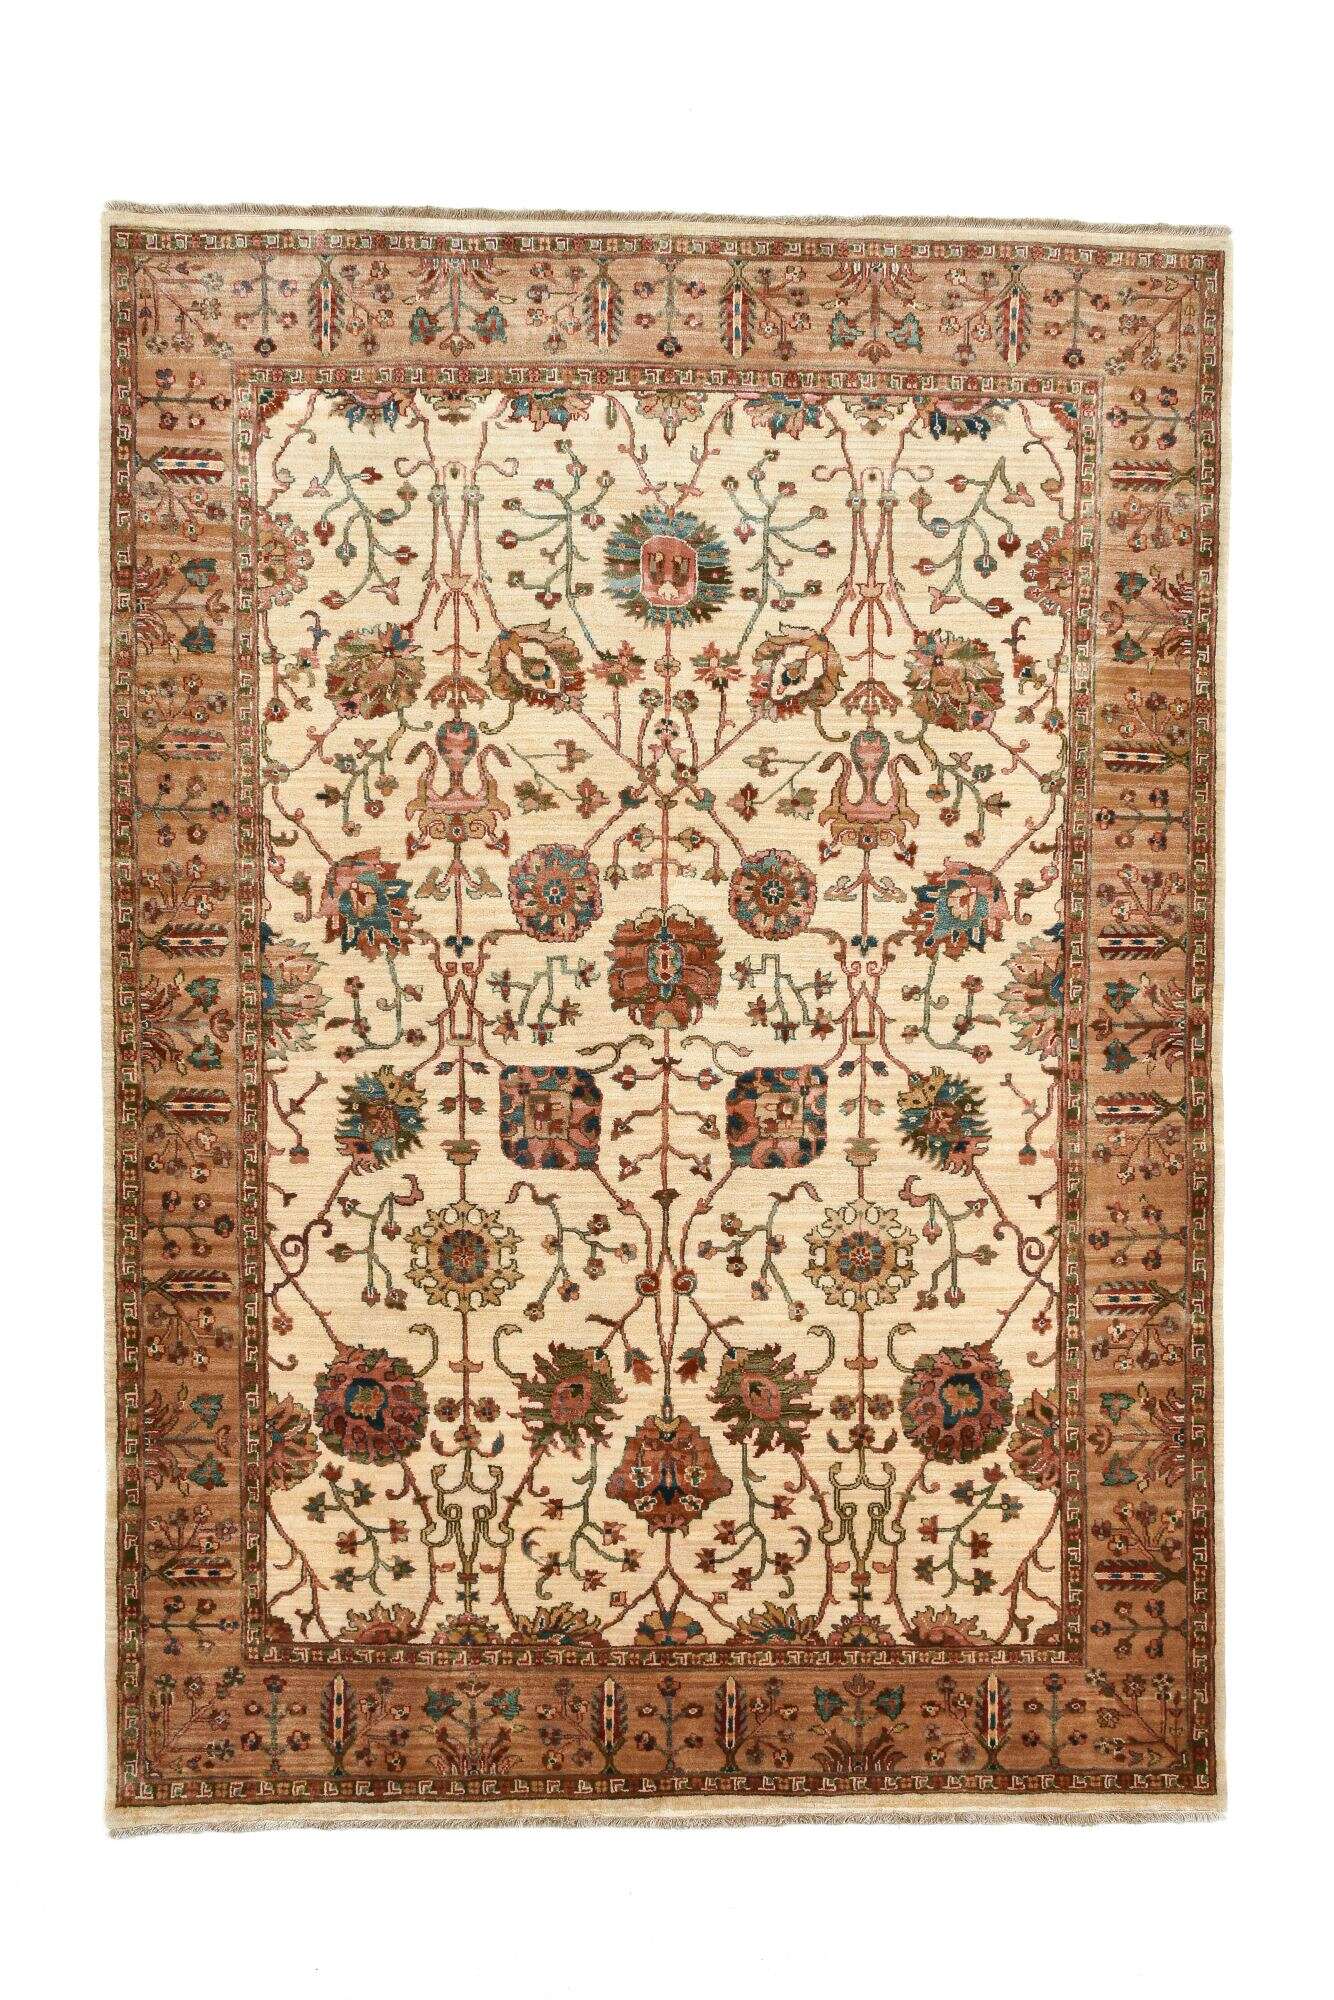  Samarkand Teppich 167x237 cm Orientteppich Handgeknüpft